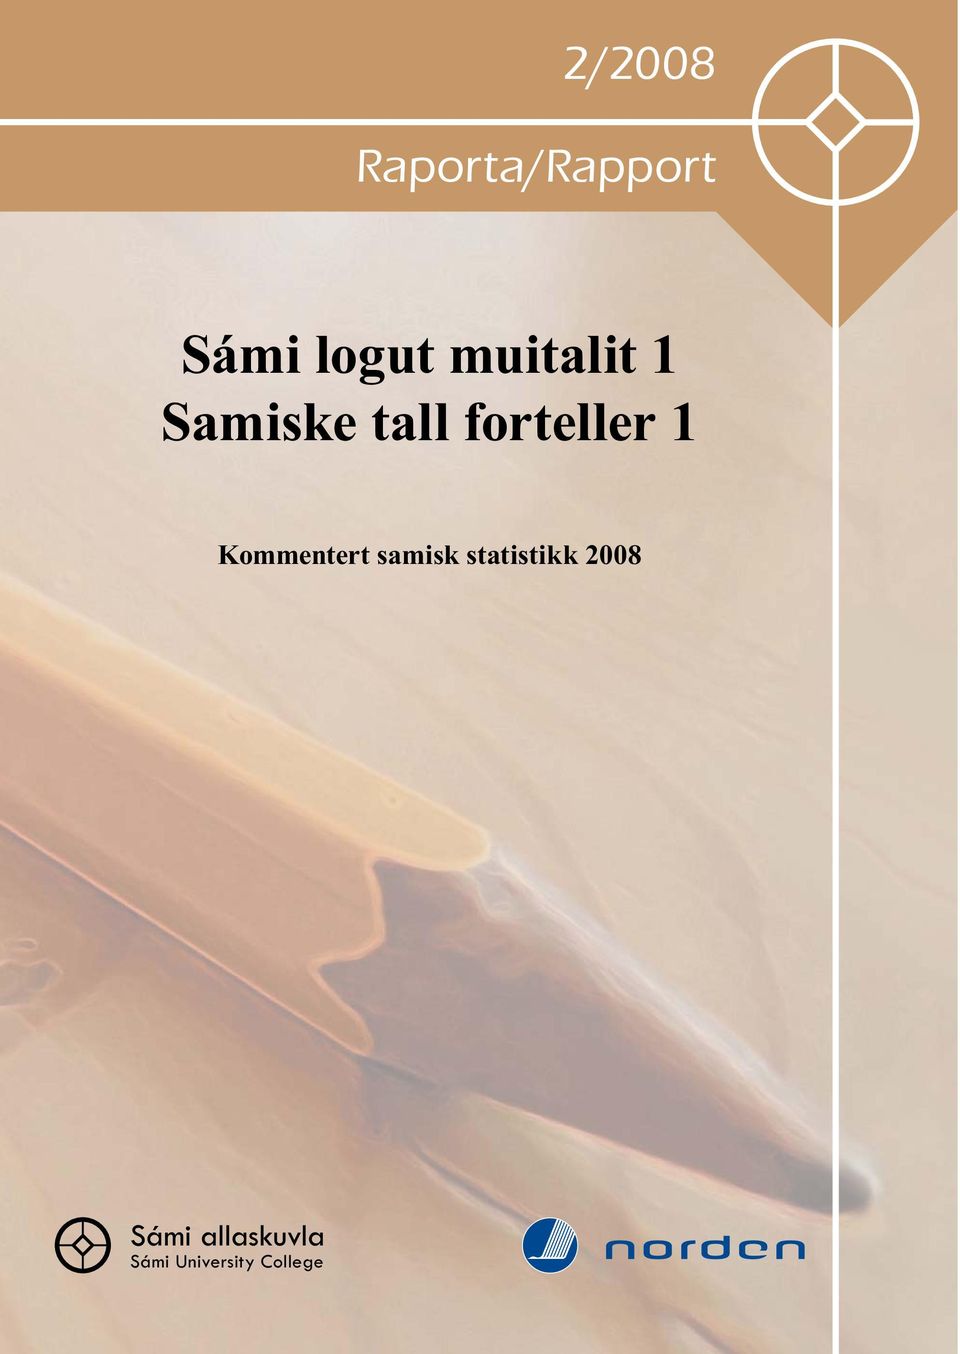 Kommentert samisk statistikk 2008